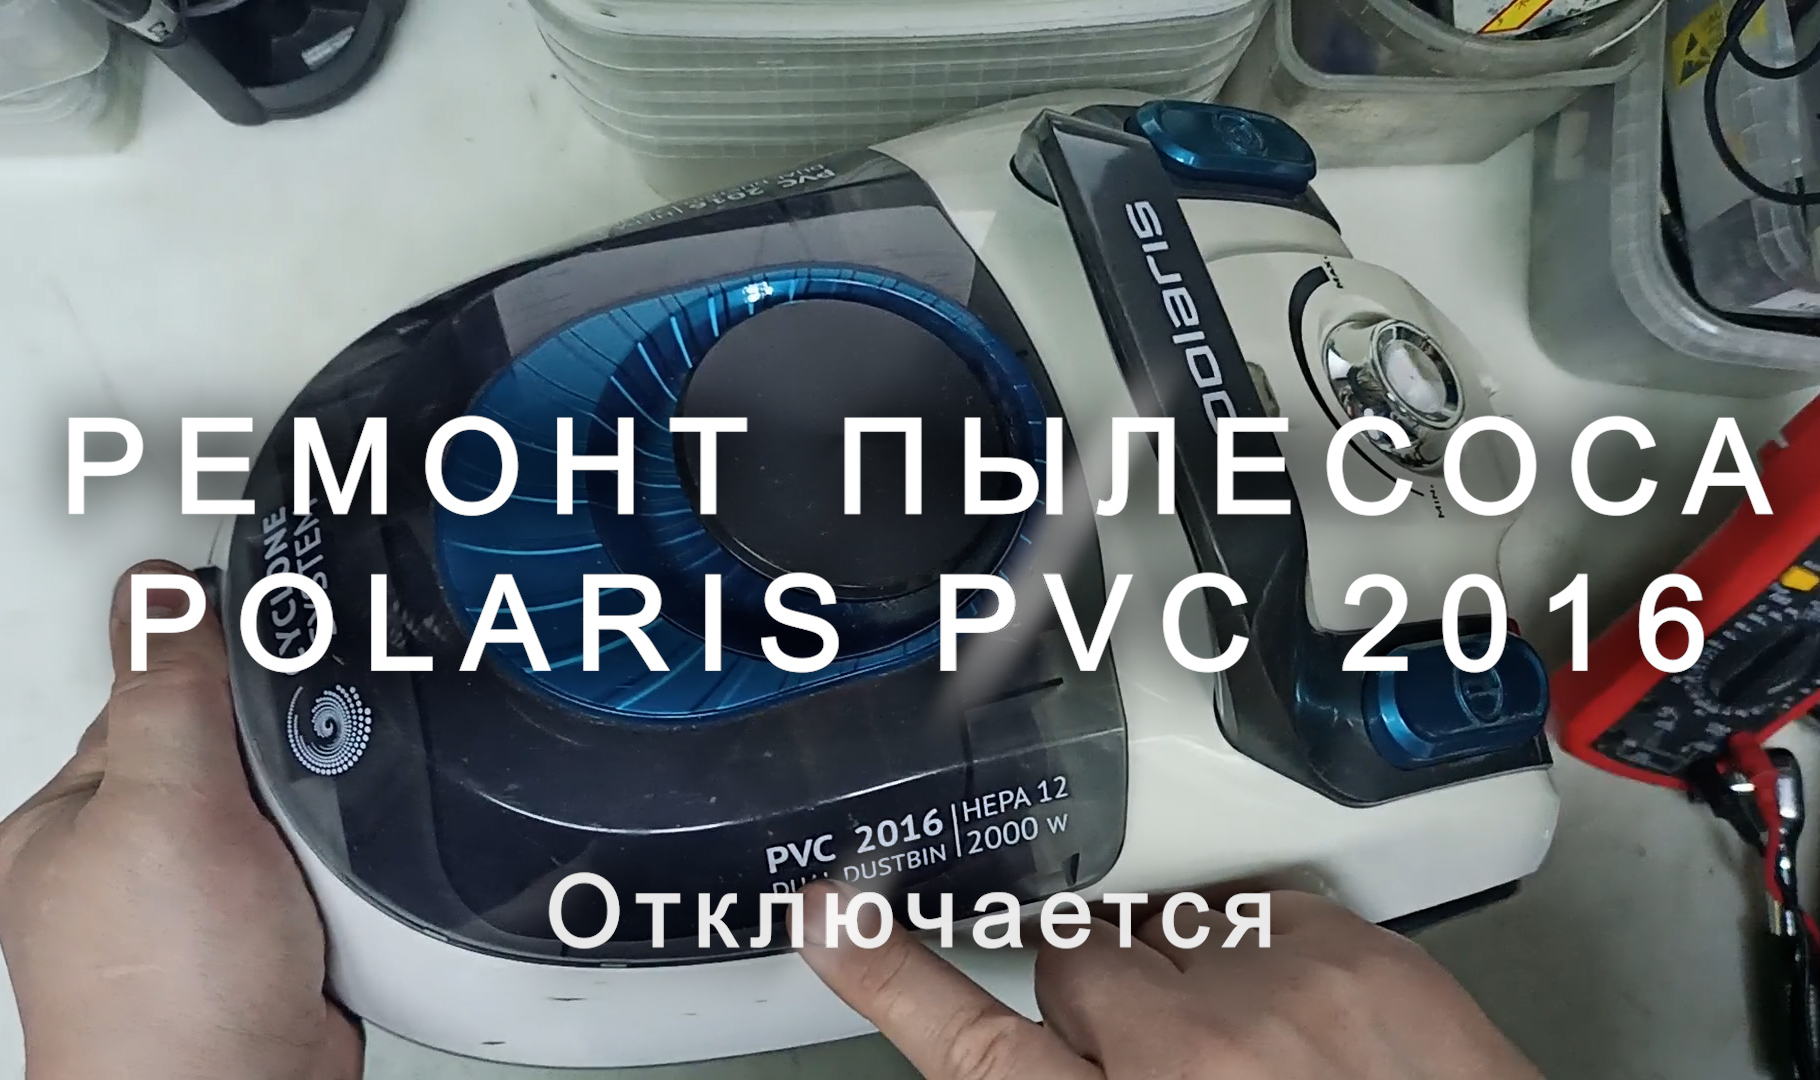 Пылесос выключается. Polaris PVC 2016. Замена подшипников пылесос Филипс. Чистка фильтра пылесоса CENTEK.